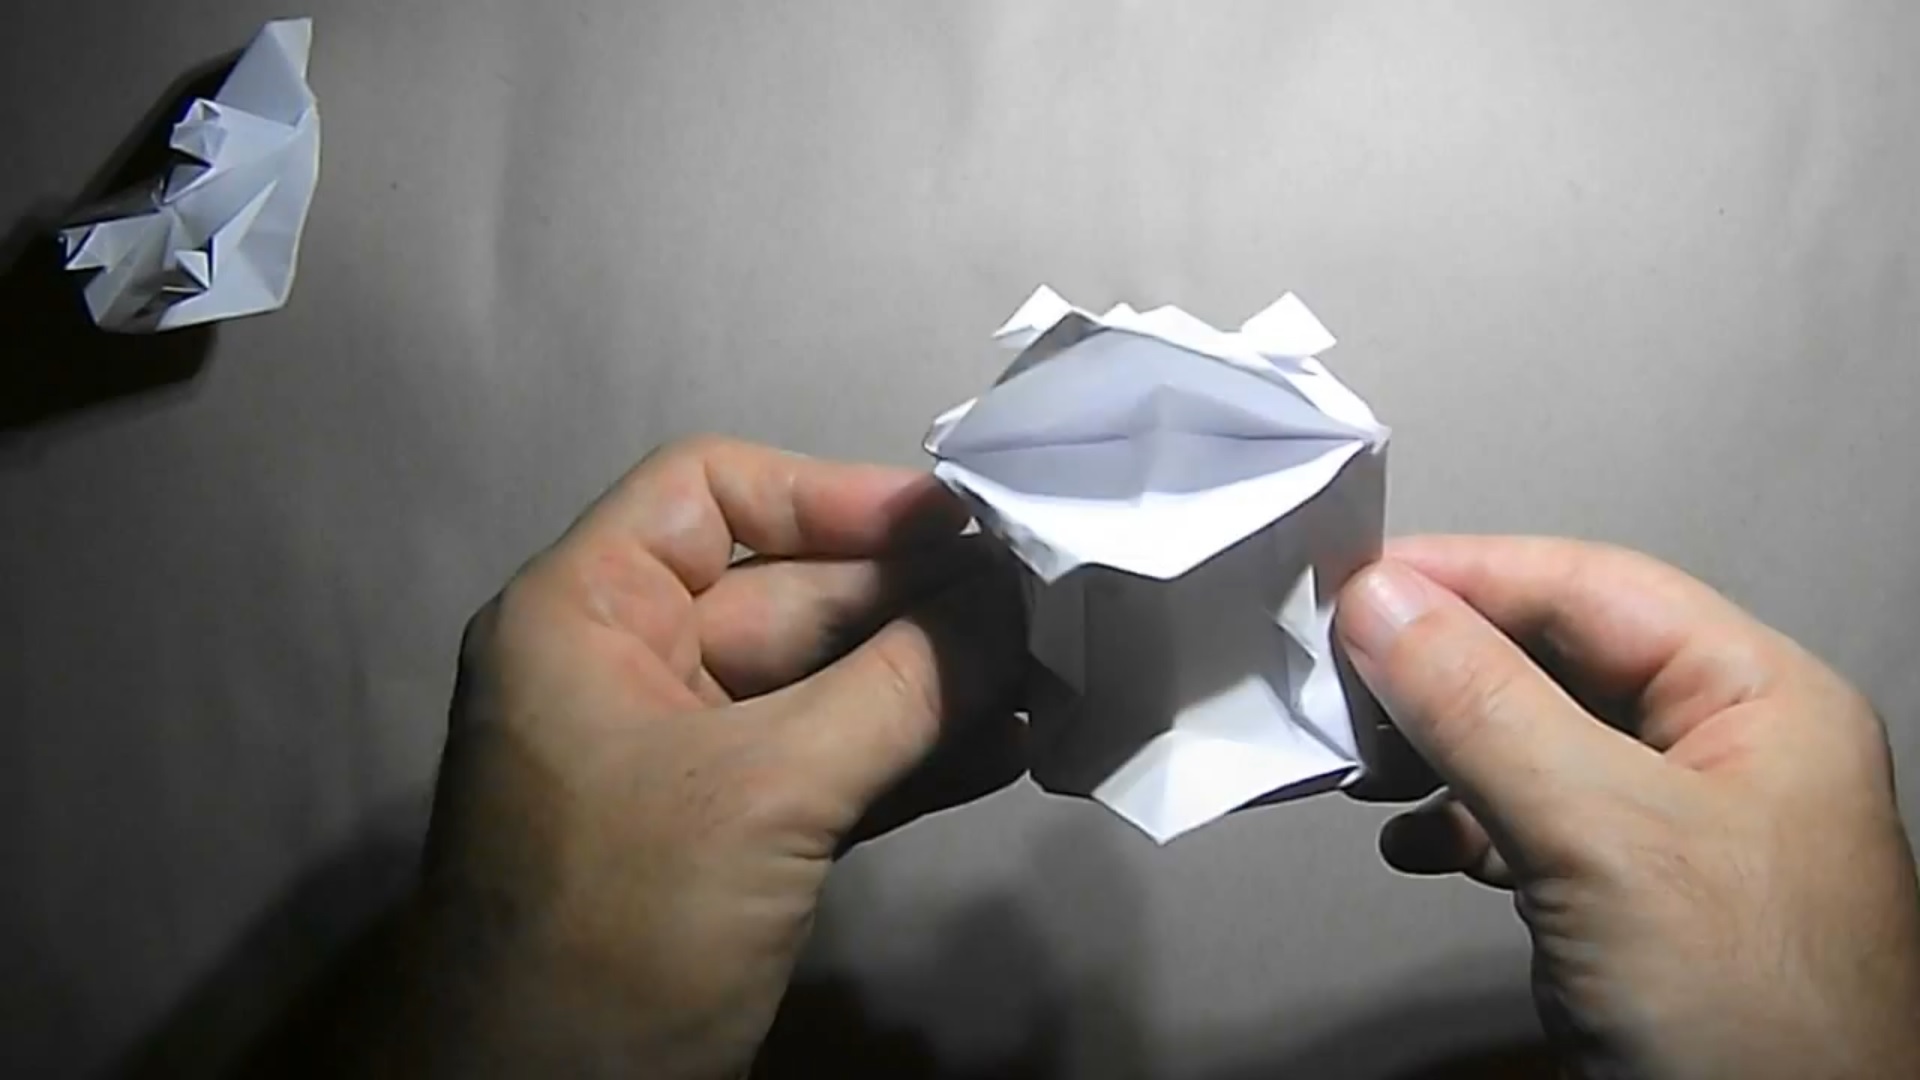 Оригами лягушка. Как сделать оригами лягушку. Голова лягушки оригами по математике 2 класс видео. Говорящее оригами